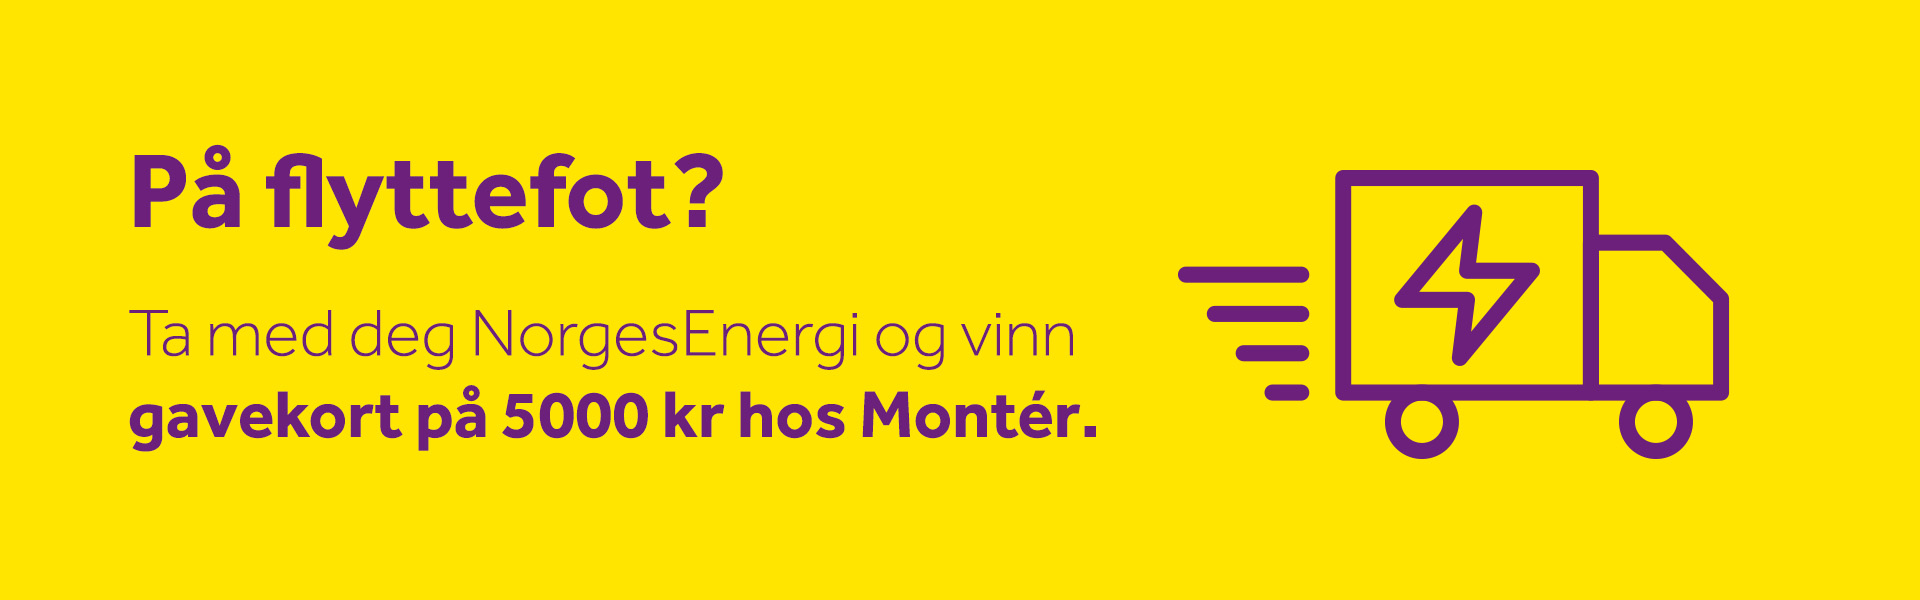 Plakat med teksten "På flyttefot? Ta med deg NorgesEnergi og vinn gavekort på 5000 kroner hos Montér.